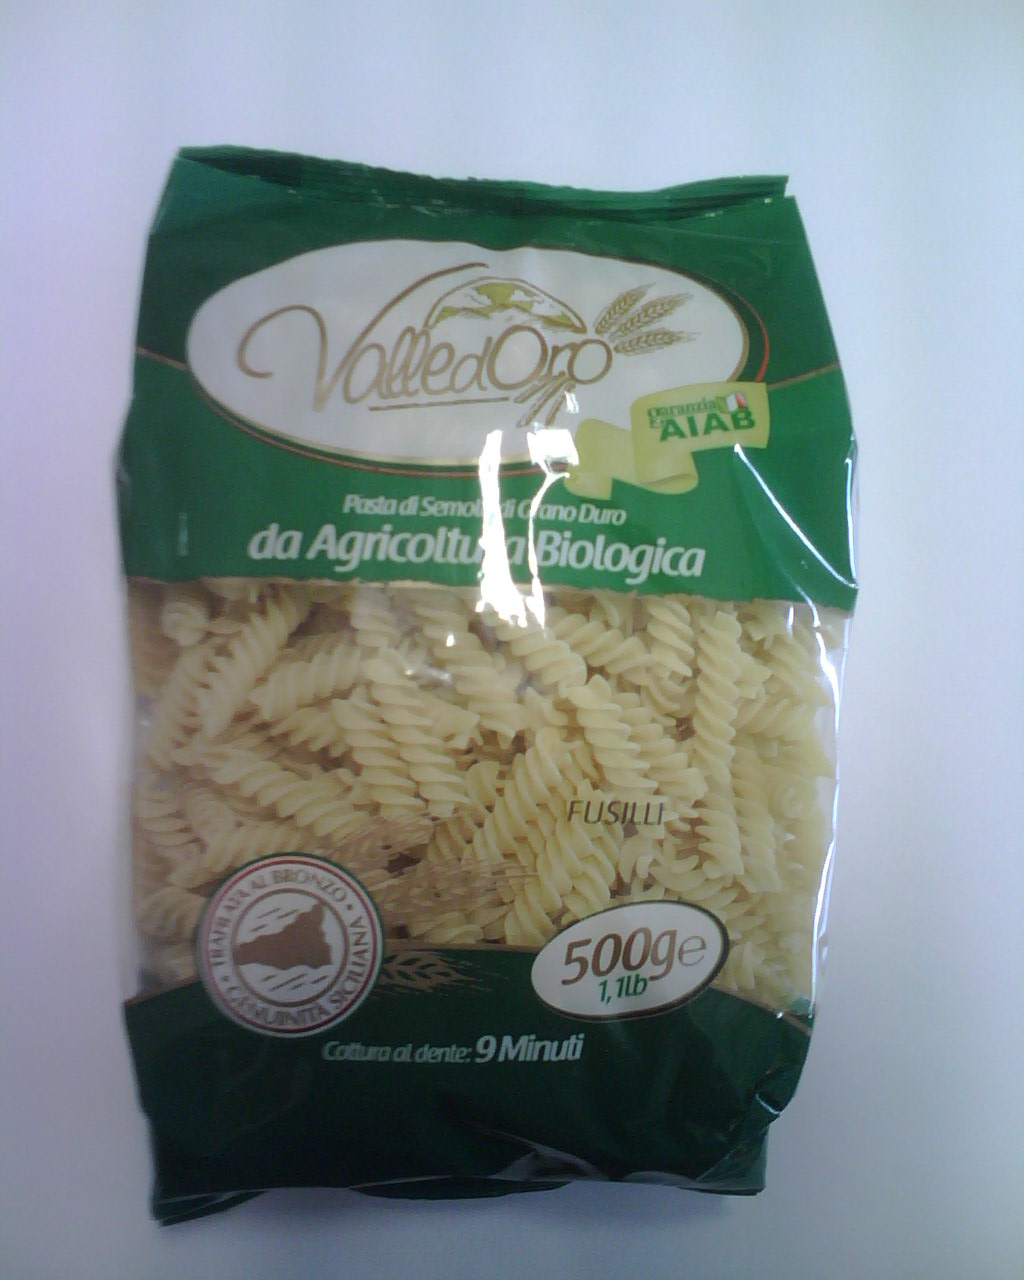 La pasta biologica  siciliana VALLEDORO è distribuita da I FRUTTIDEL SOLE